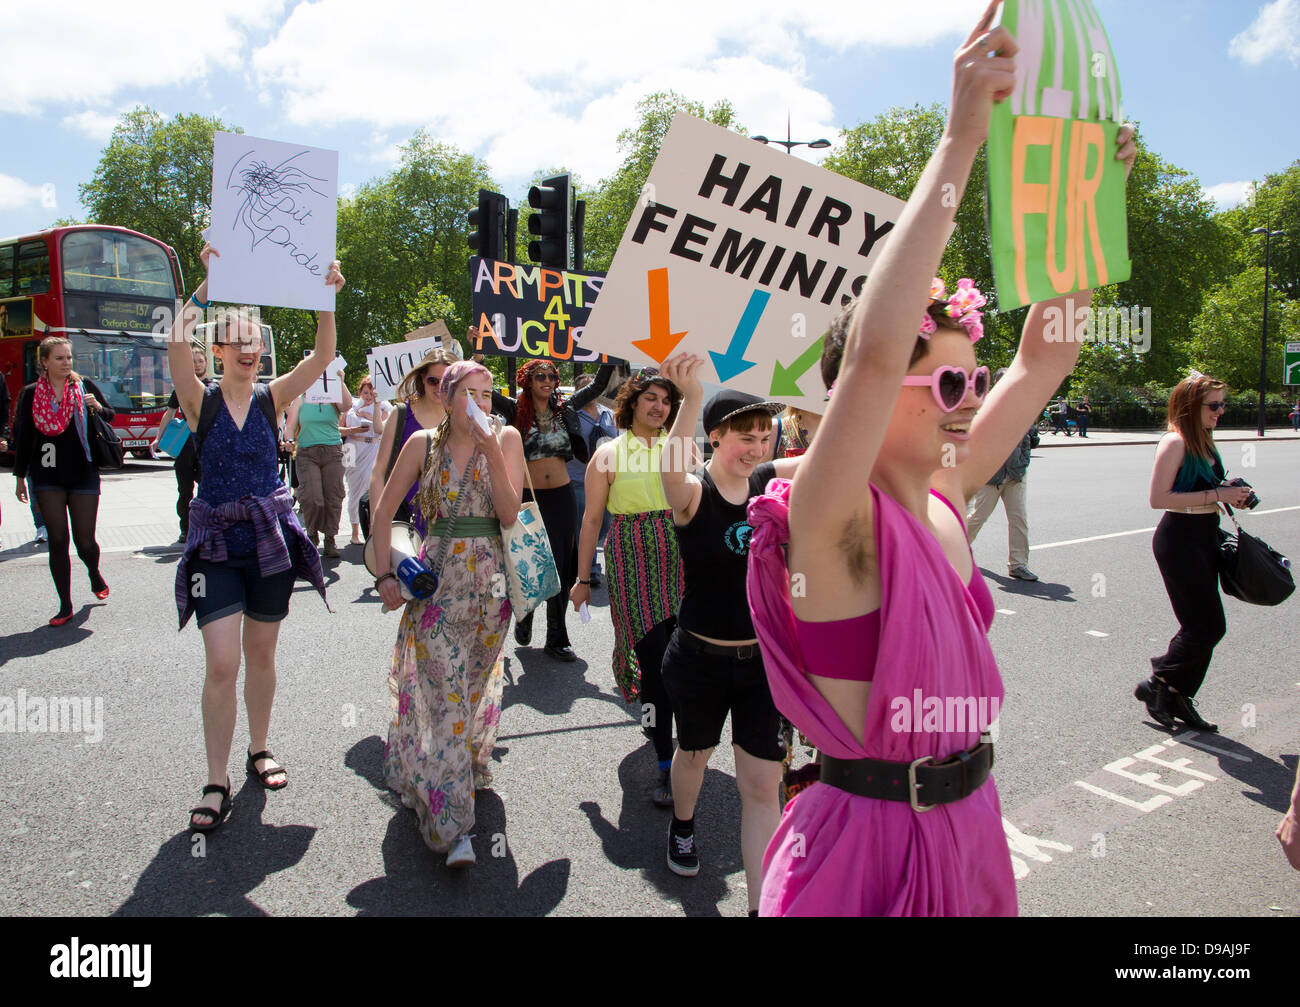 Frauen mit Plakaten auf Marmor Arch in London zur Sensibilisierung für den bevorstehenden Achseln 4 August-Sponsoring-Veranstaltung. Stockfoto